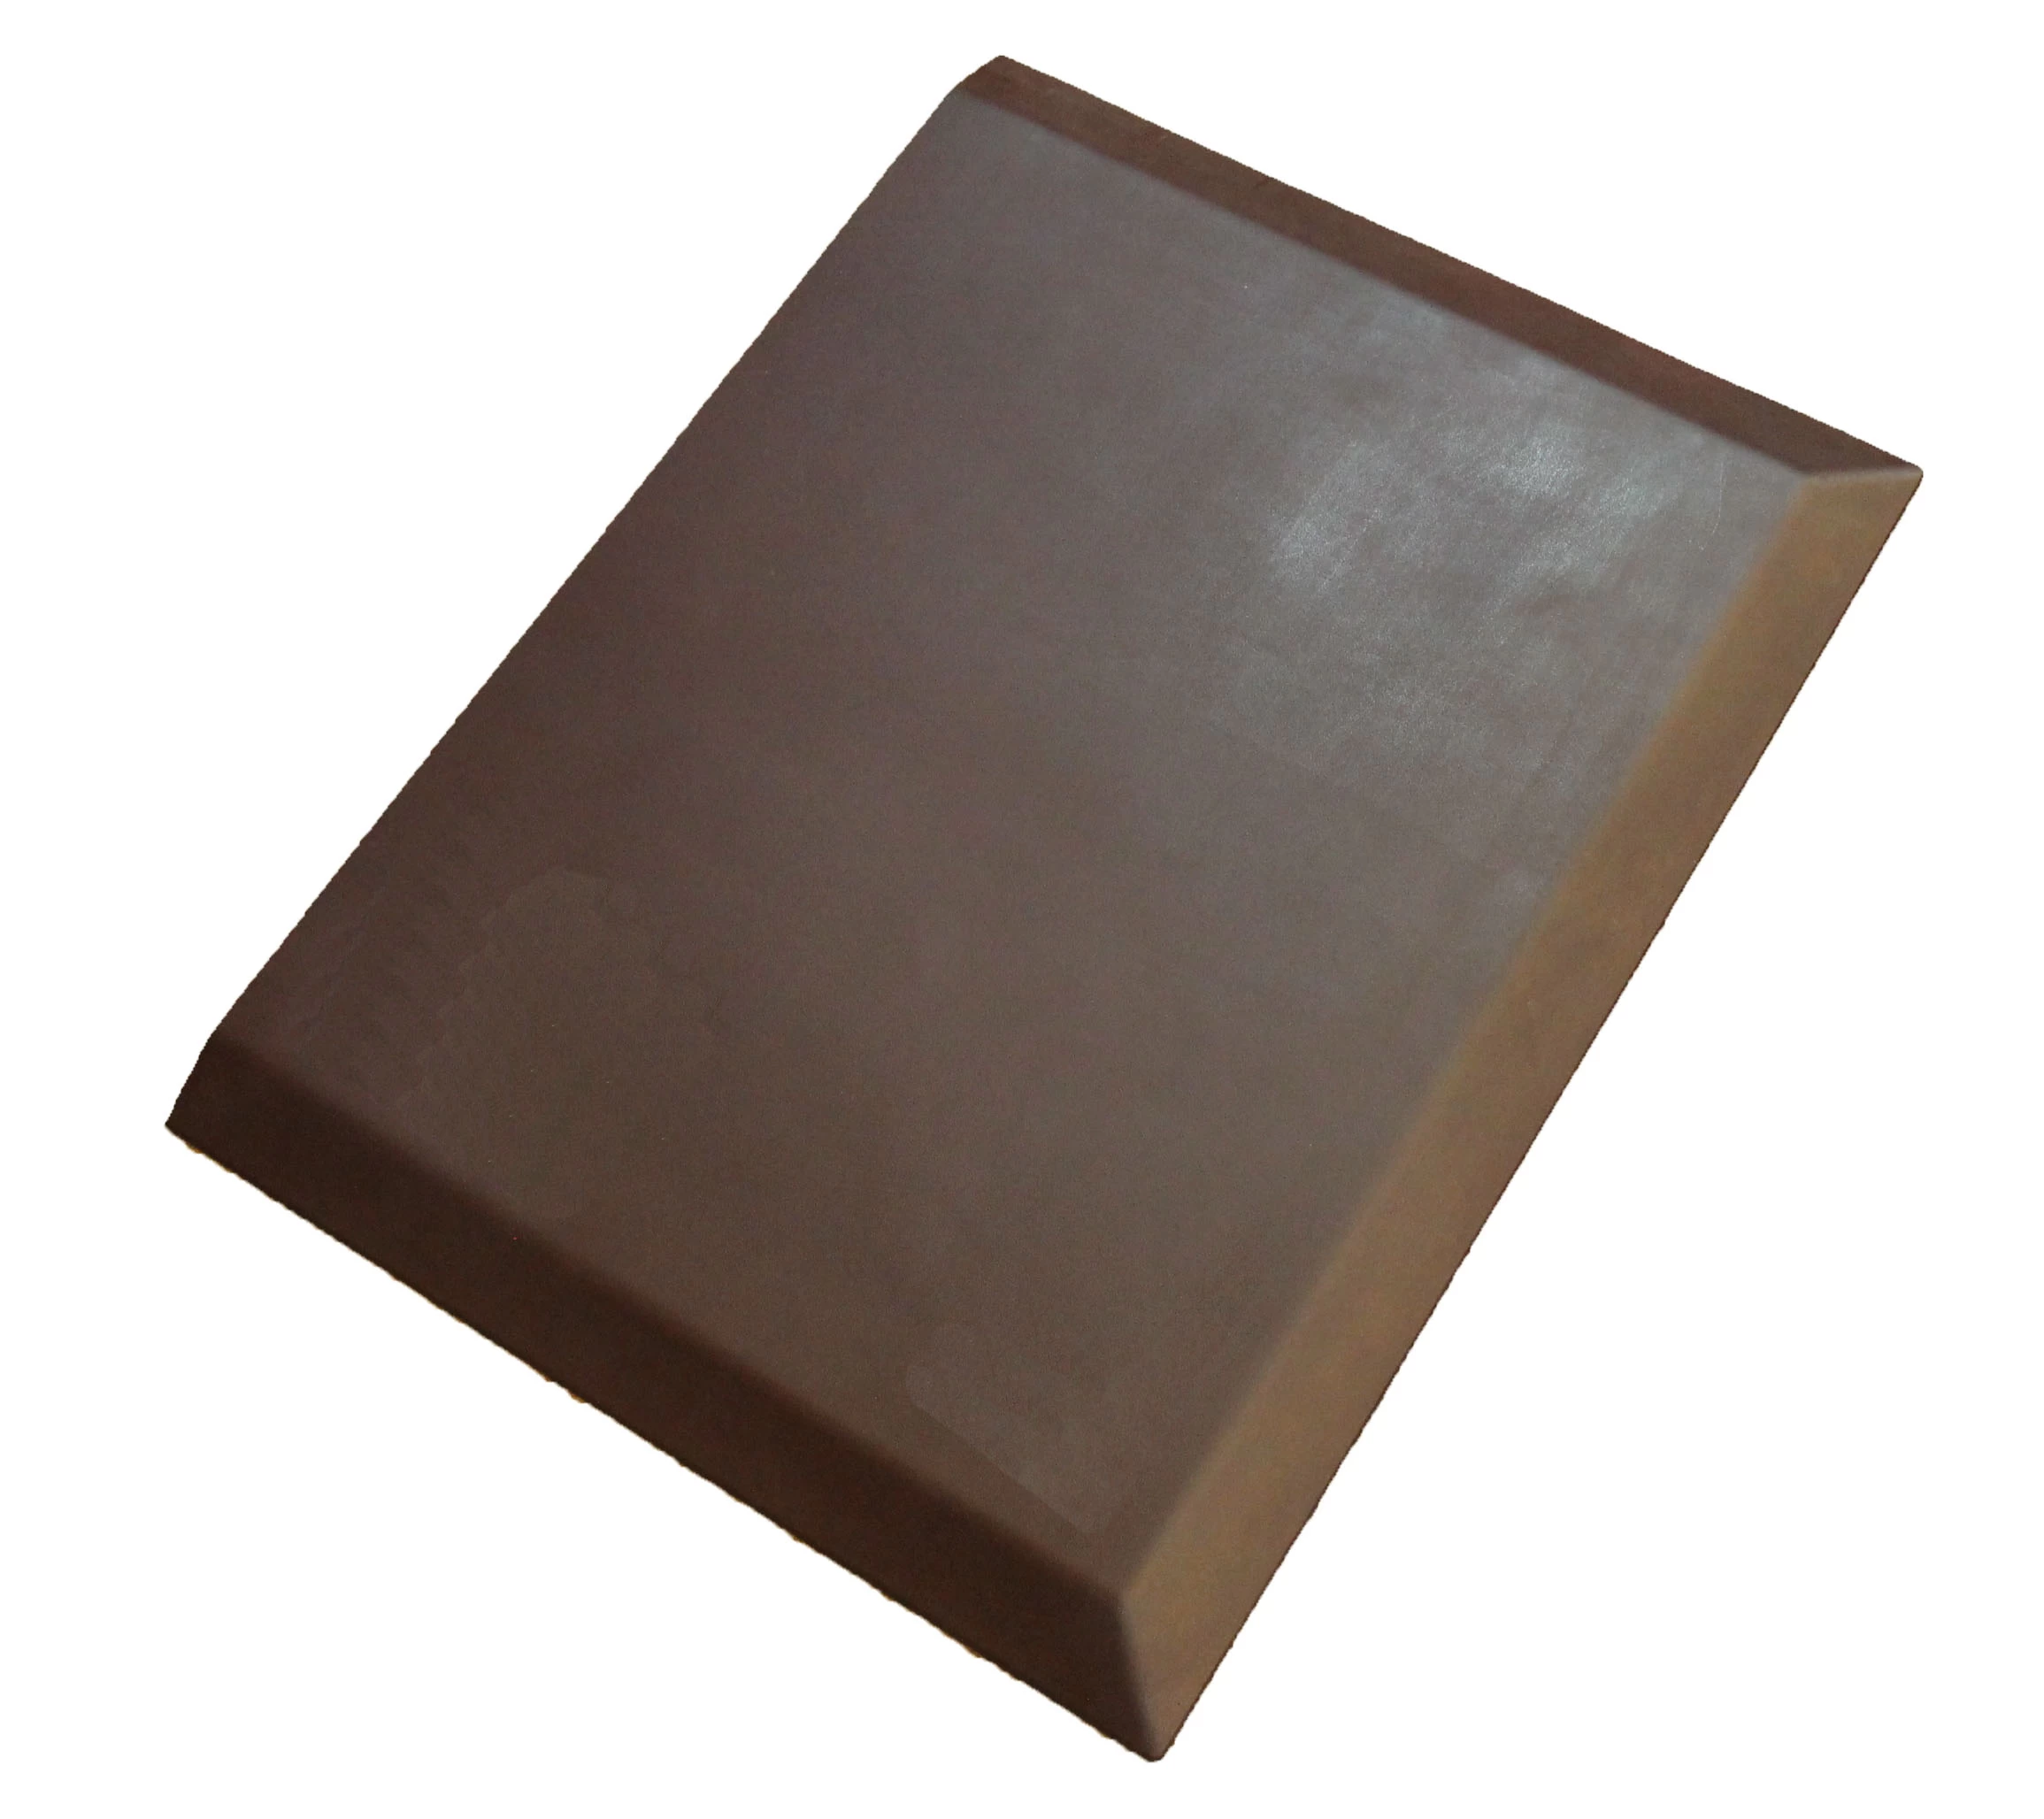 Polyurethane antifatigue mat, standing mats, rubber floor matting, outdoor safety mats, non slip floor mats